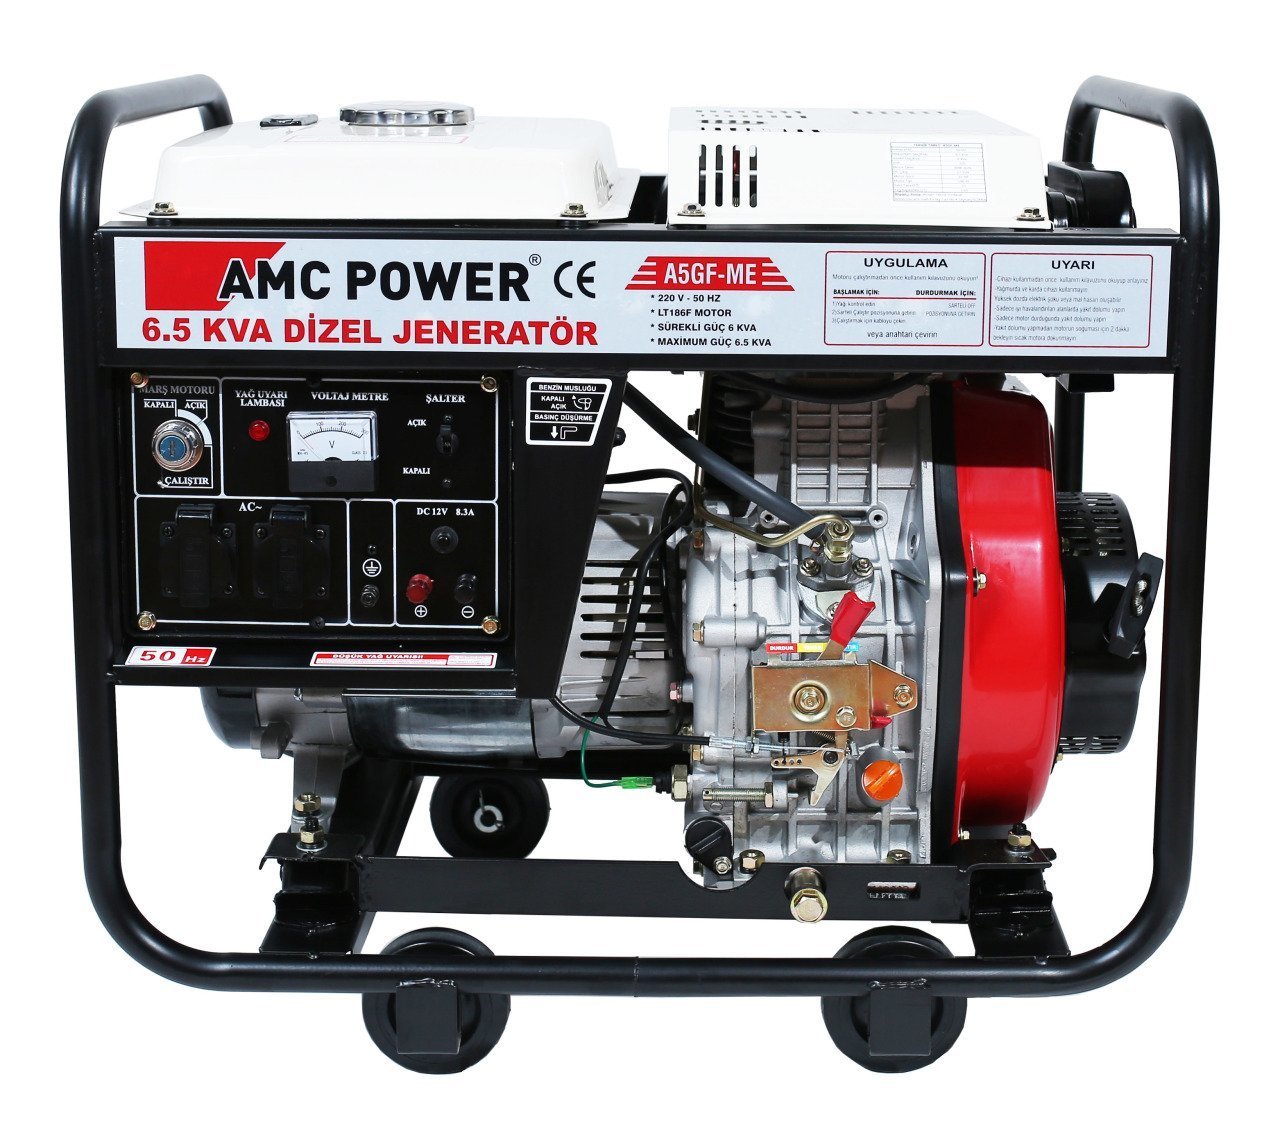 AMC Power A5GF-ME Dizel Jeneratör 6,5 kVA